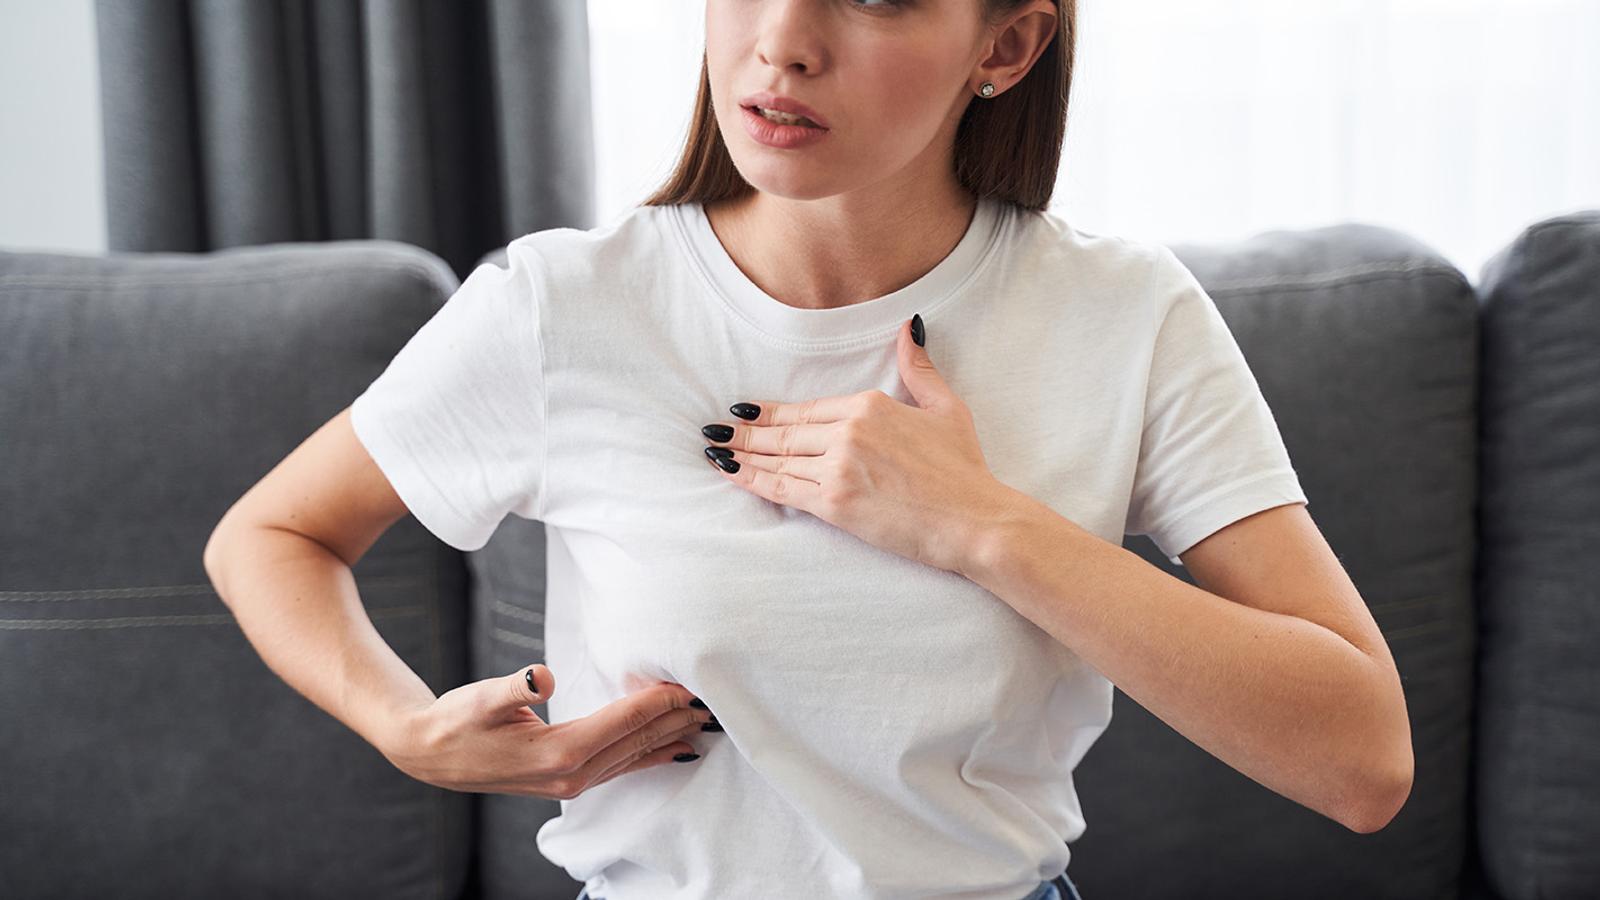 Mastodynie Brustschmerzen bei Frauen